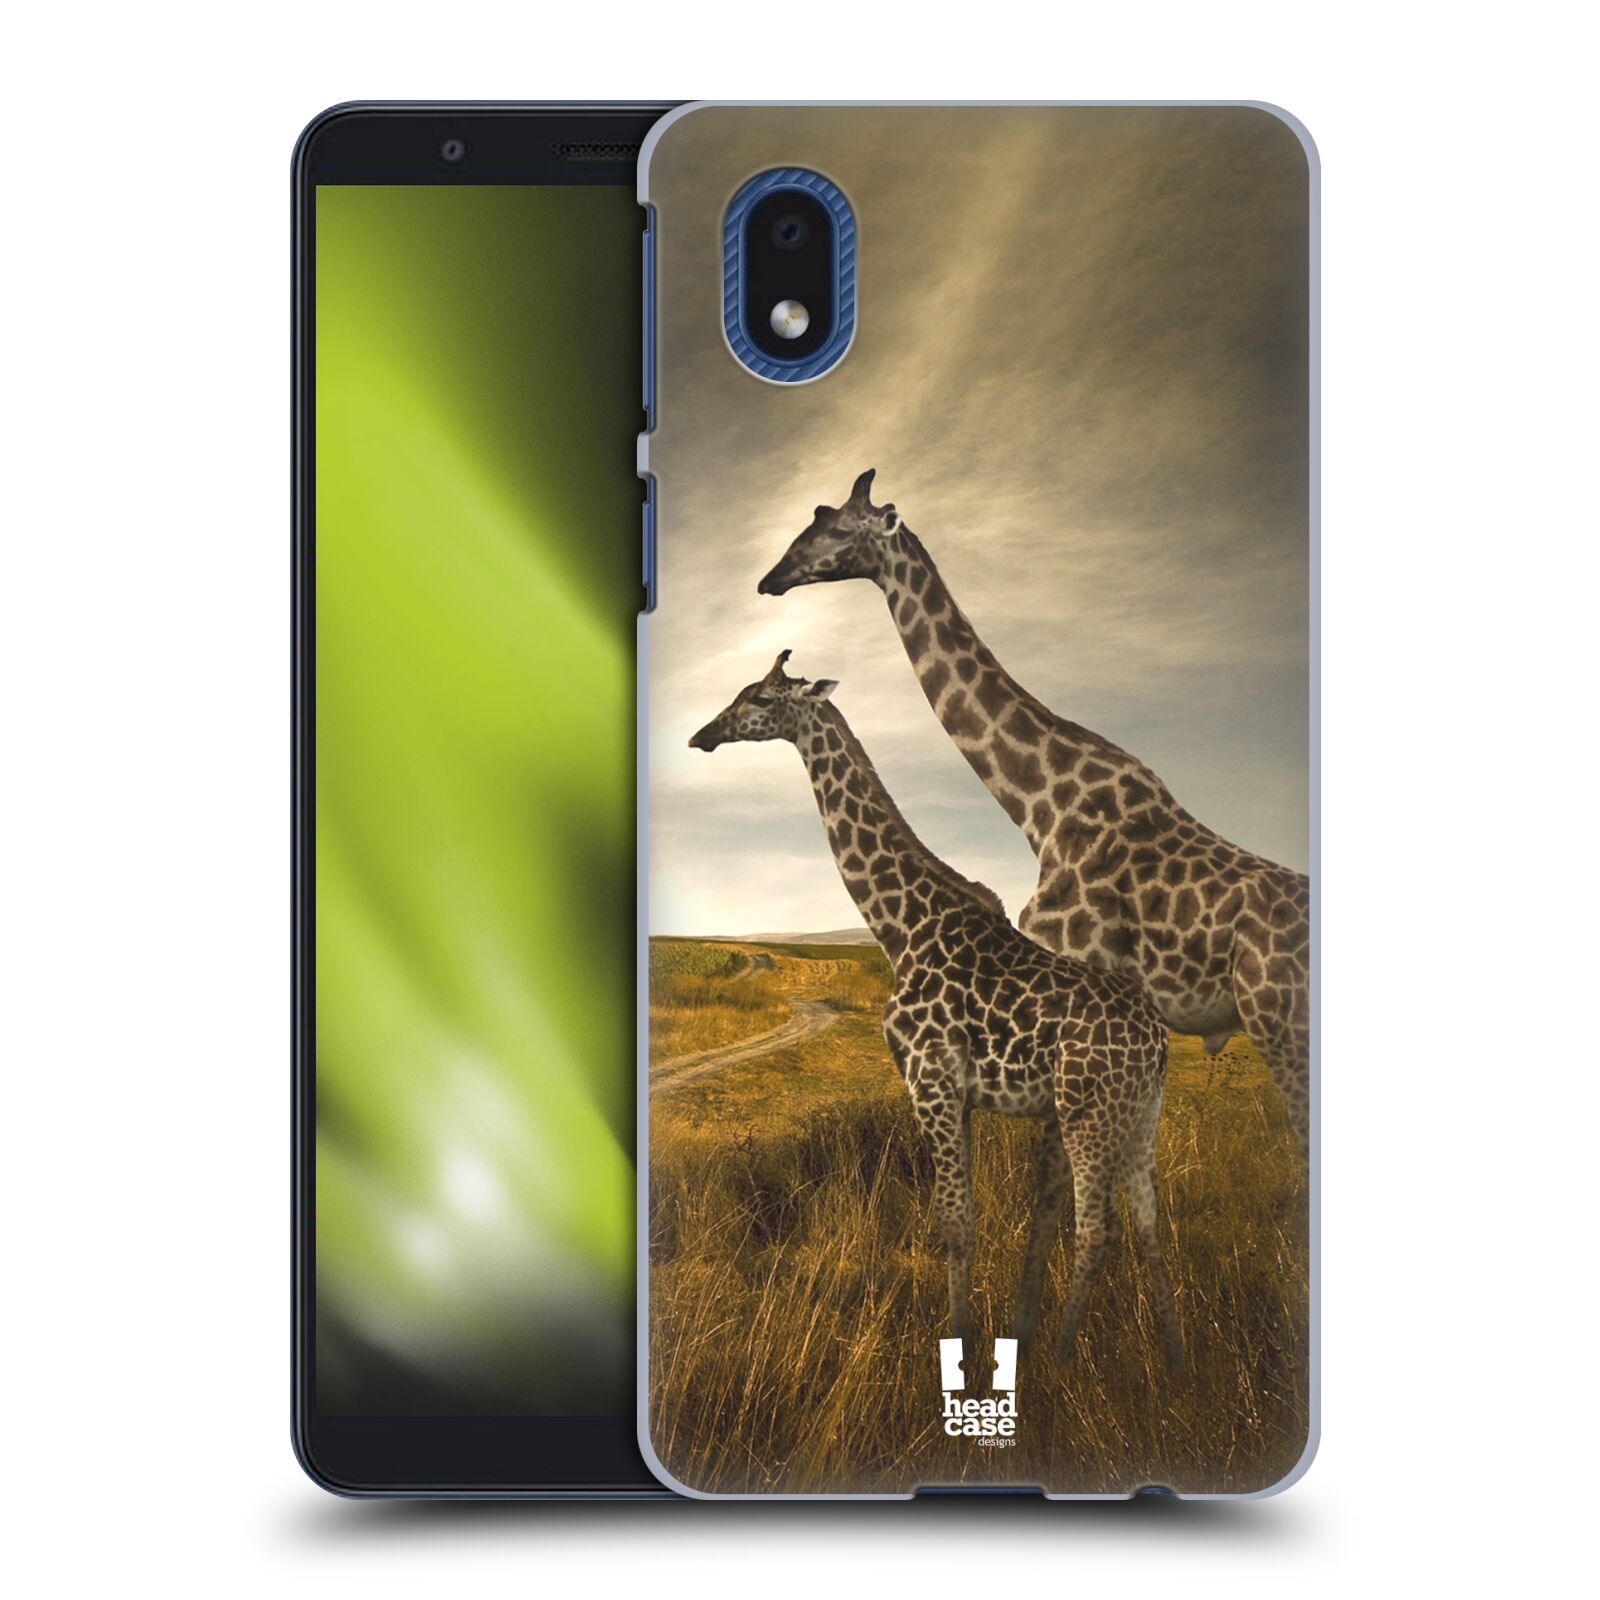 Zadní obal pro mobil Samsung Galaxy A01 CORE - HEAD CASE - Svět zvířat žirafy